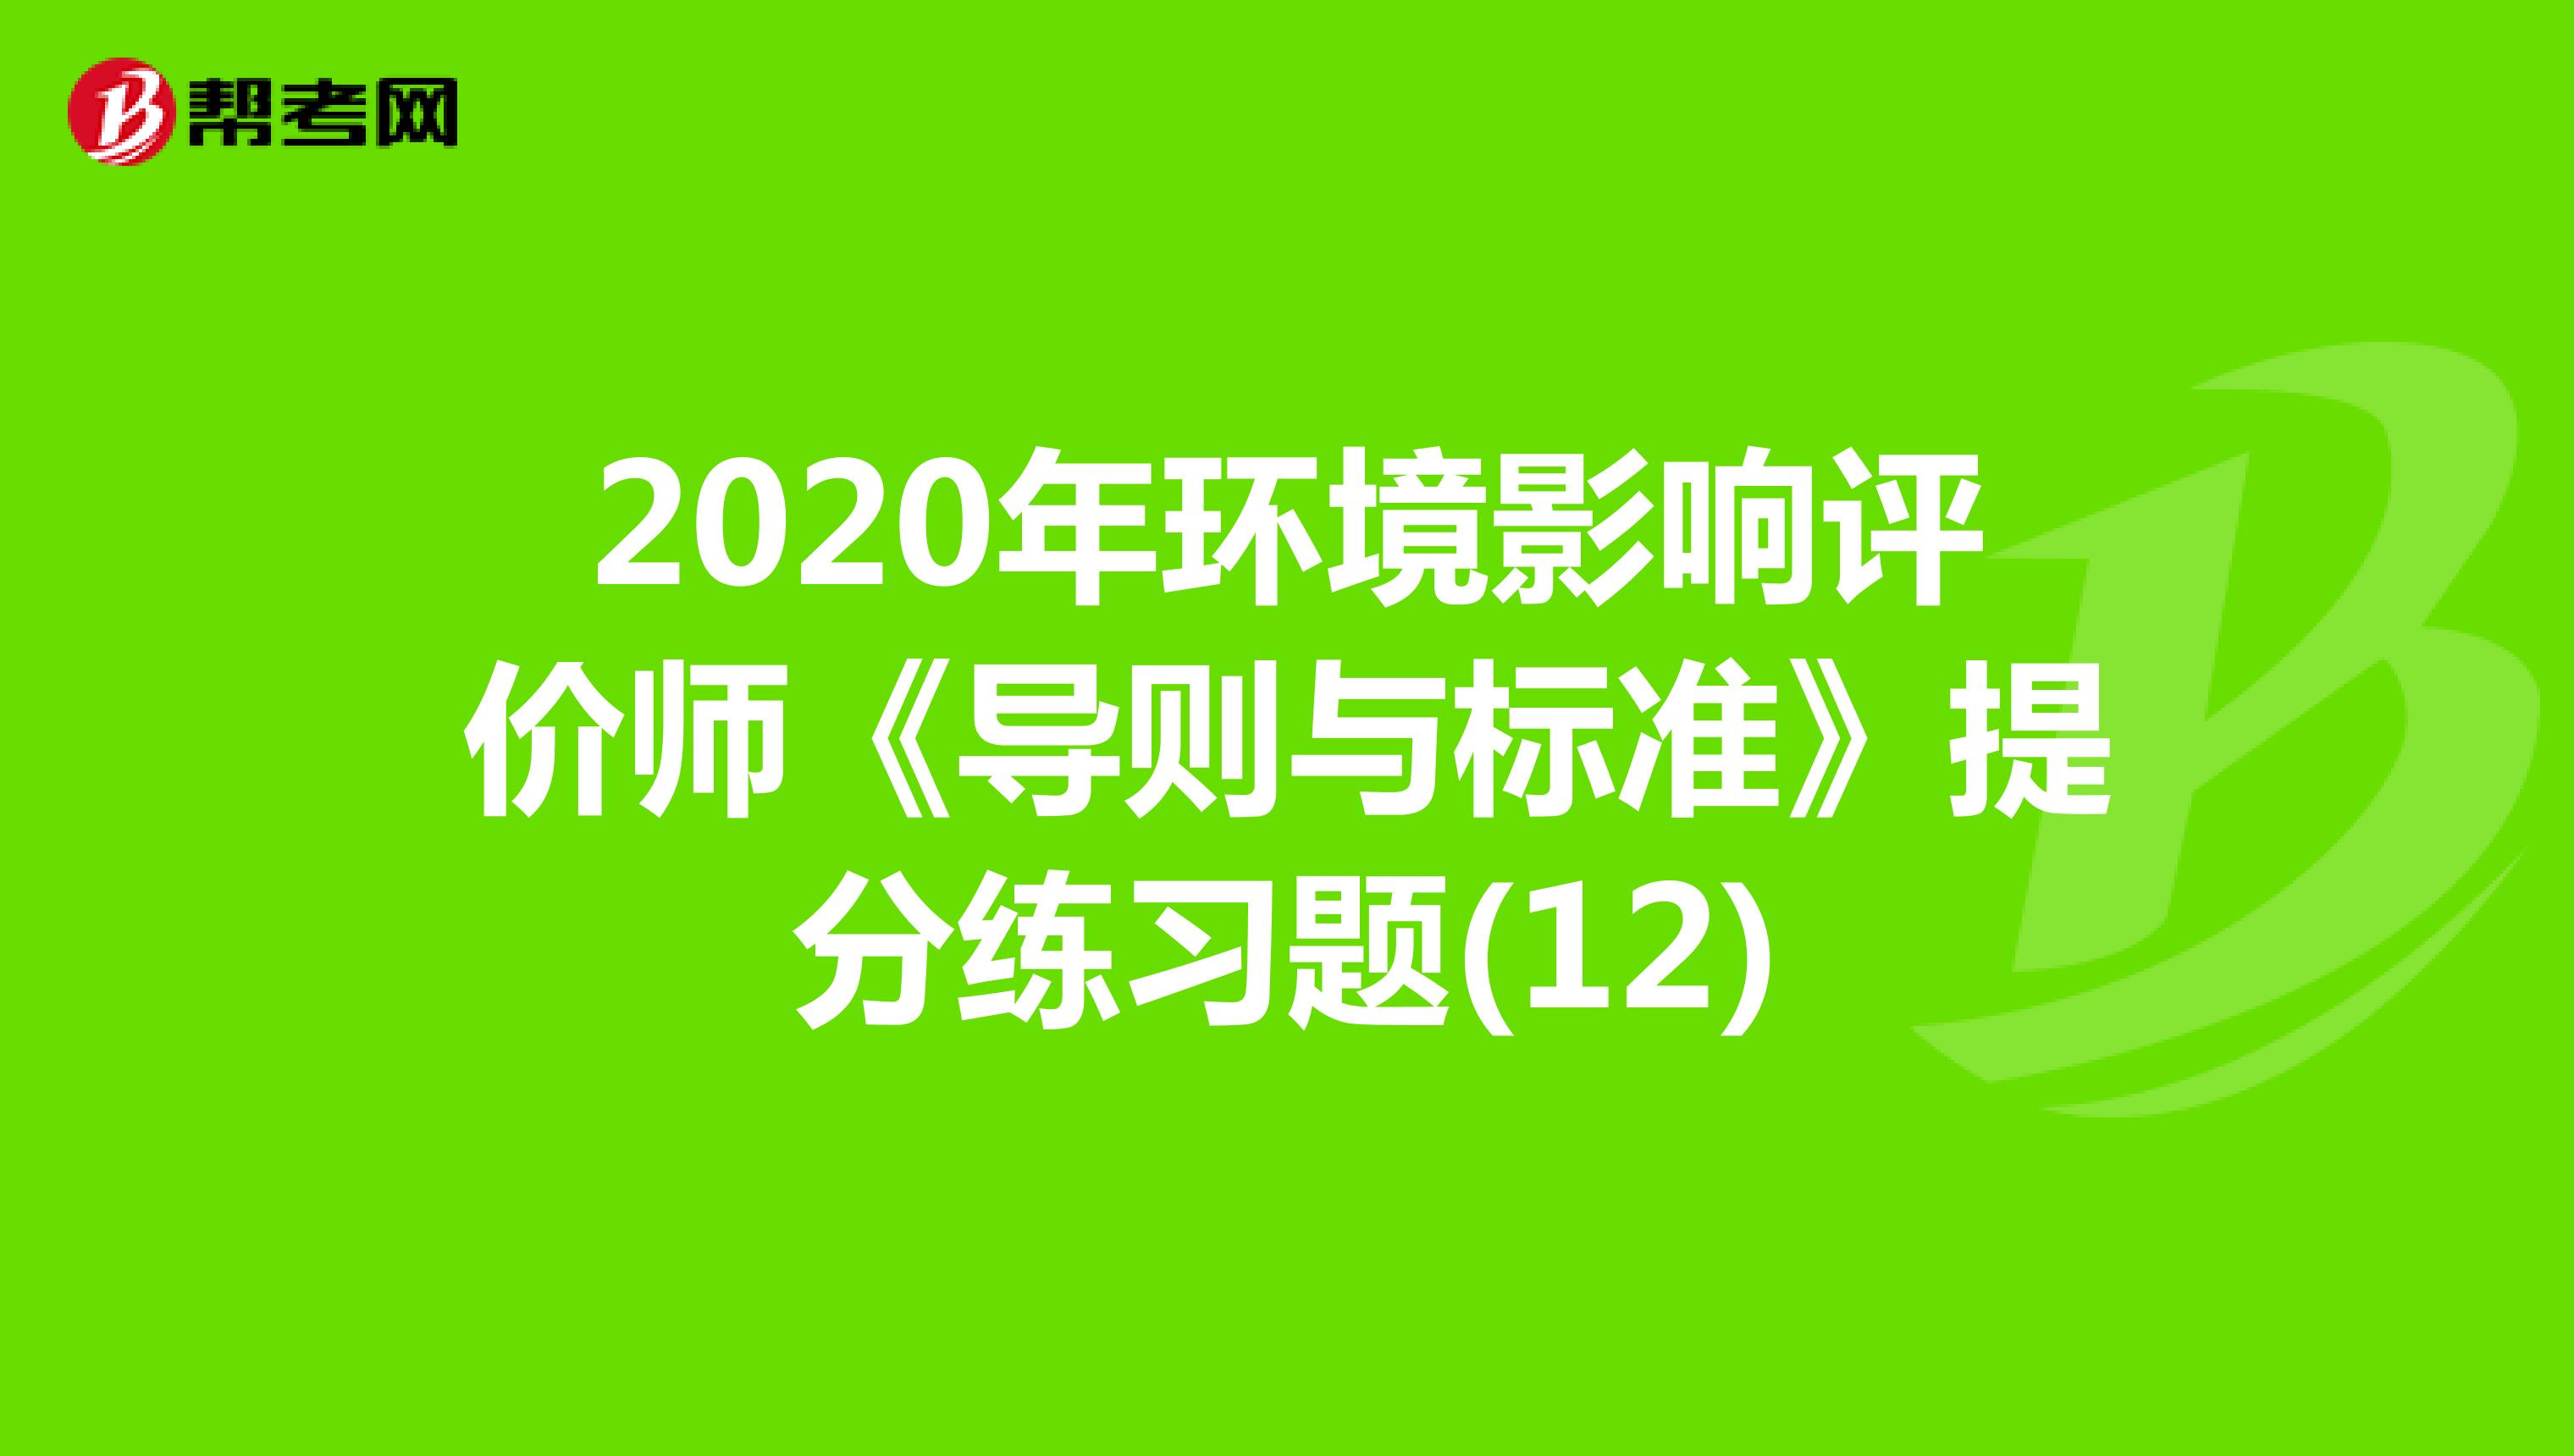 2020年环境影响评价师《导则与标准》提分练习题(12)